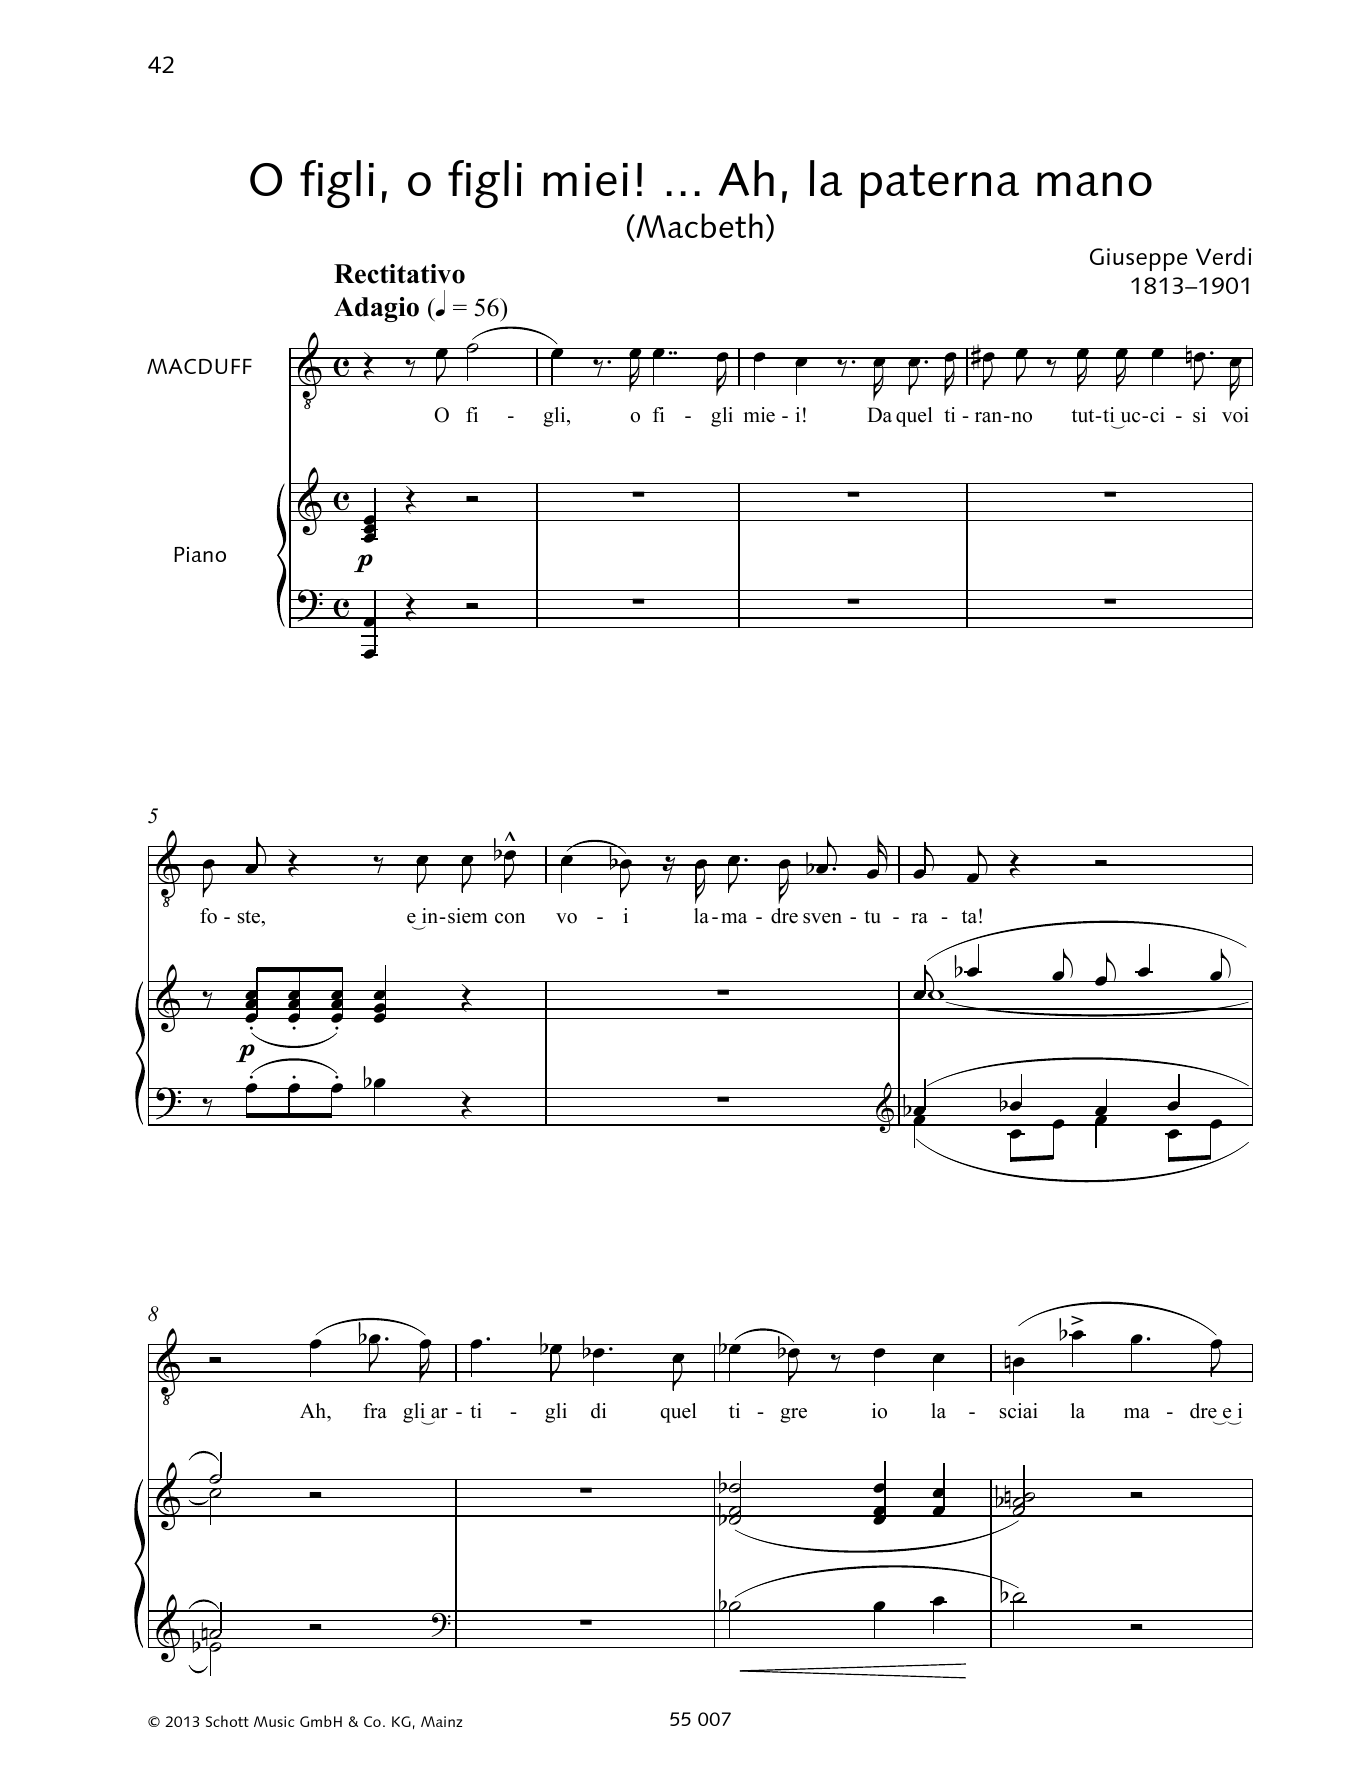 Download Francesca Licciarda O figli, o figli miei! ... Ah, la paterna mano Sheet Music and learn how to play Piano & Vocal PDF digital score in minutes